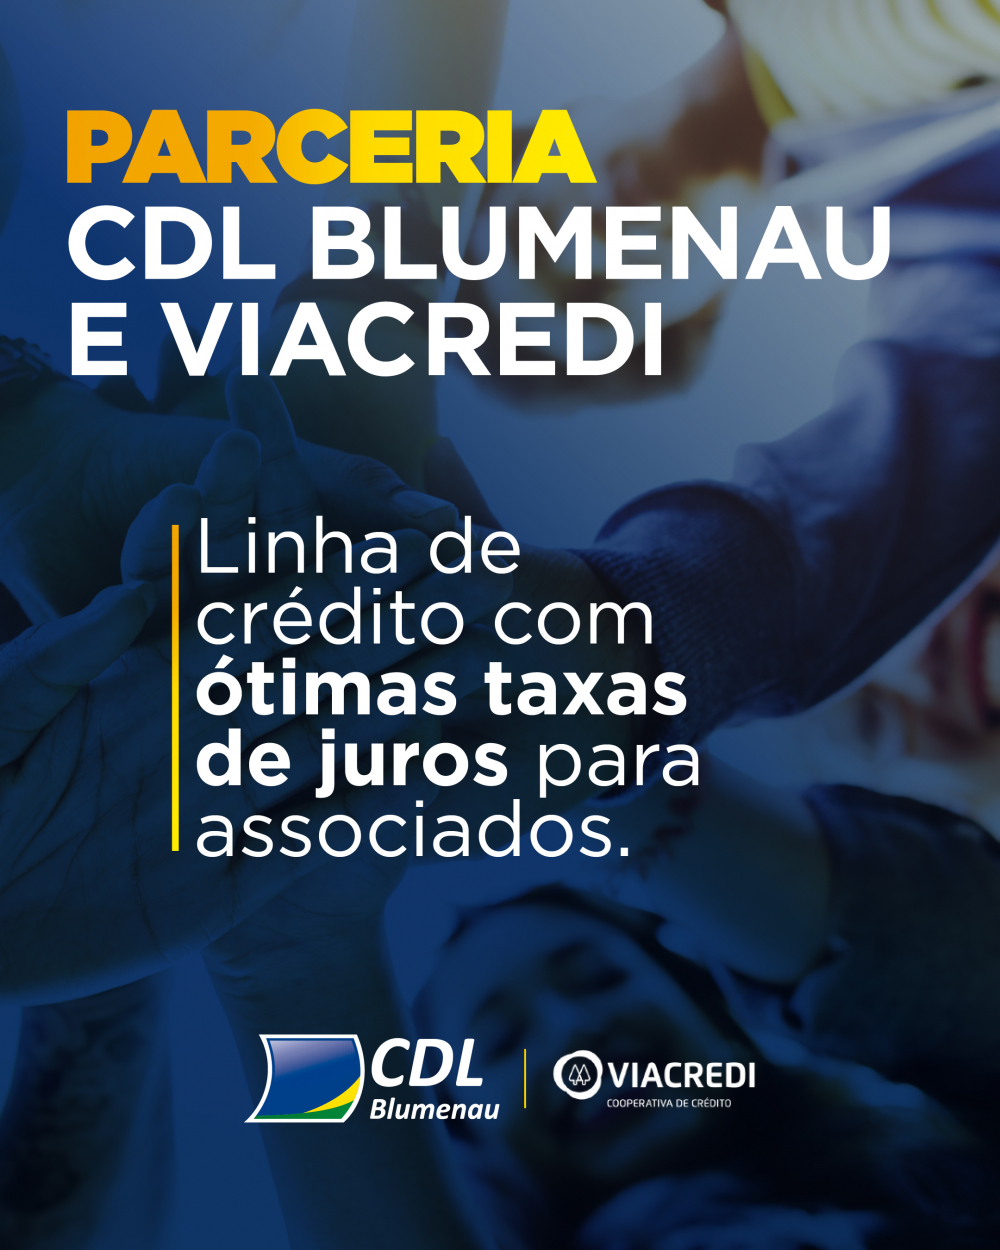 CDL Blumenau e Viacredi firmam parceria para oferecer crédito aos associados